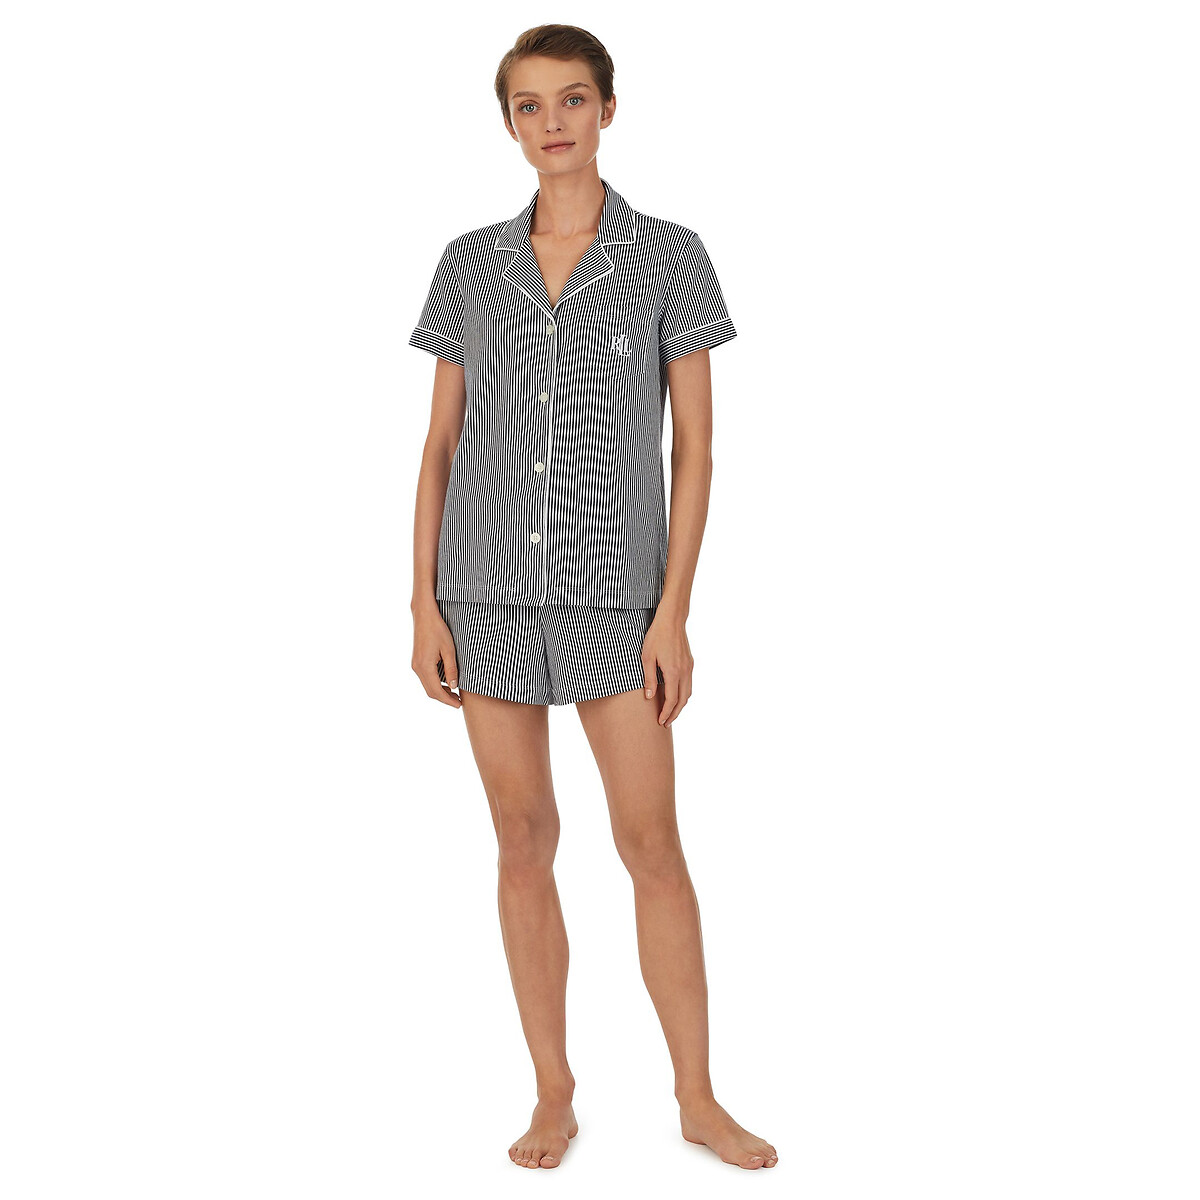 Пижама С короткими рукавами из хлопка в полоску XL синий